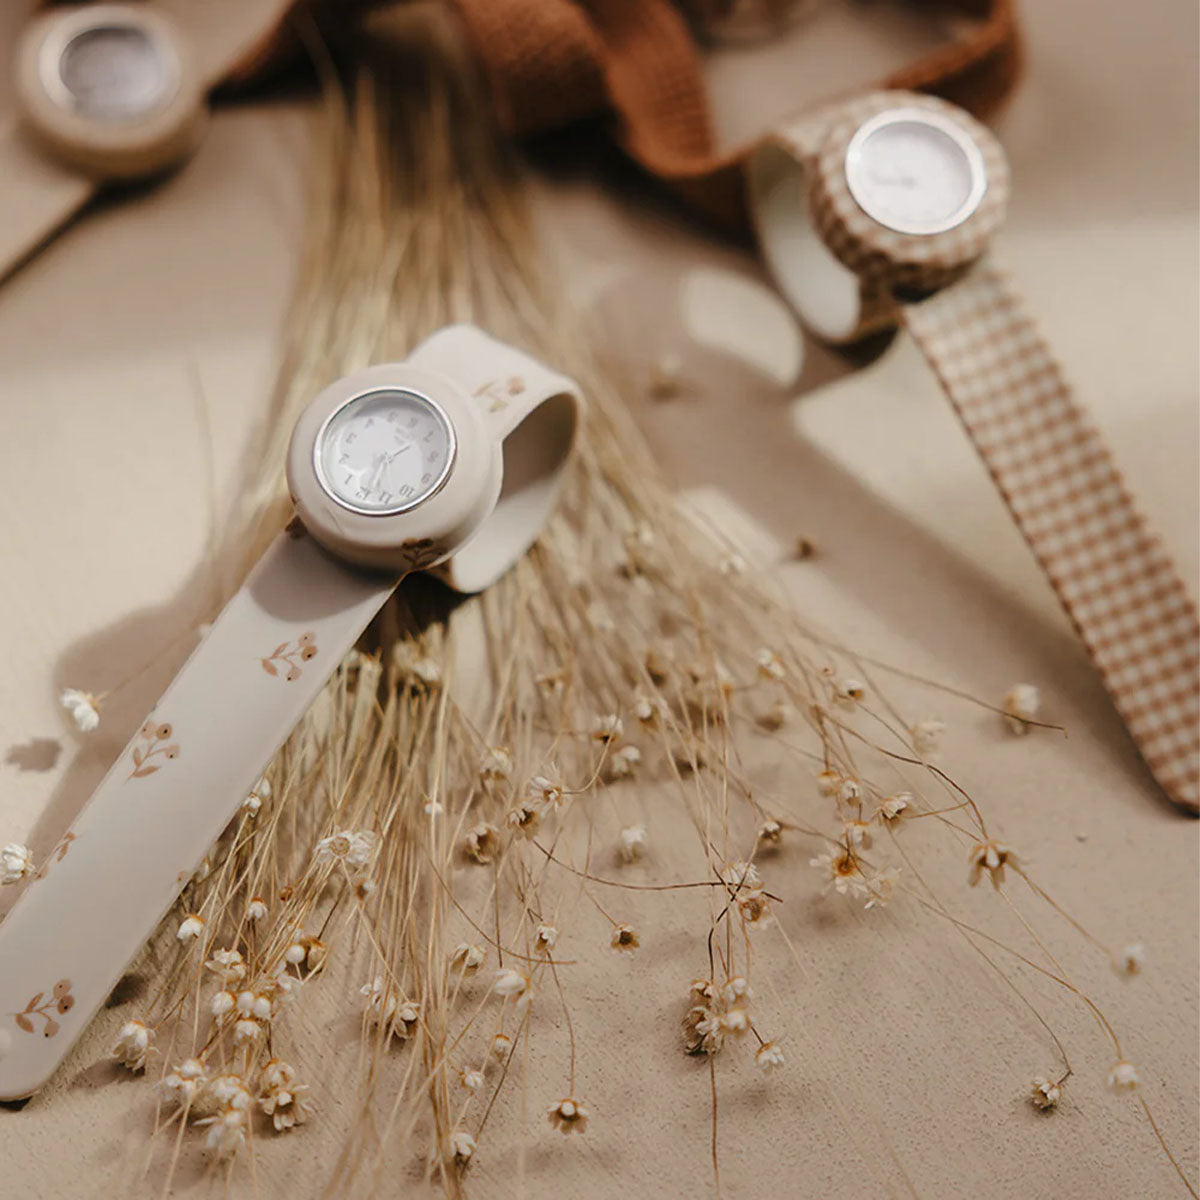 Het Mrs Ertha new strapies horloge flower buds is het ideale eerste horloge voor jouw kindje! Of misschien zelfs voor jou zelf? Dit horloge draagt lekker comfortabel en heeft prachtige, zachte kleuren. VanZus.